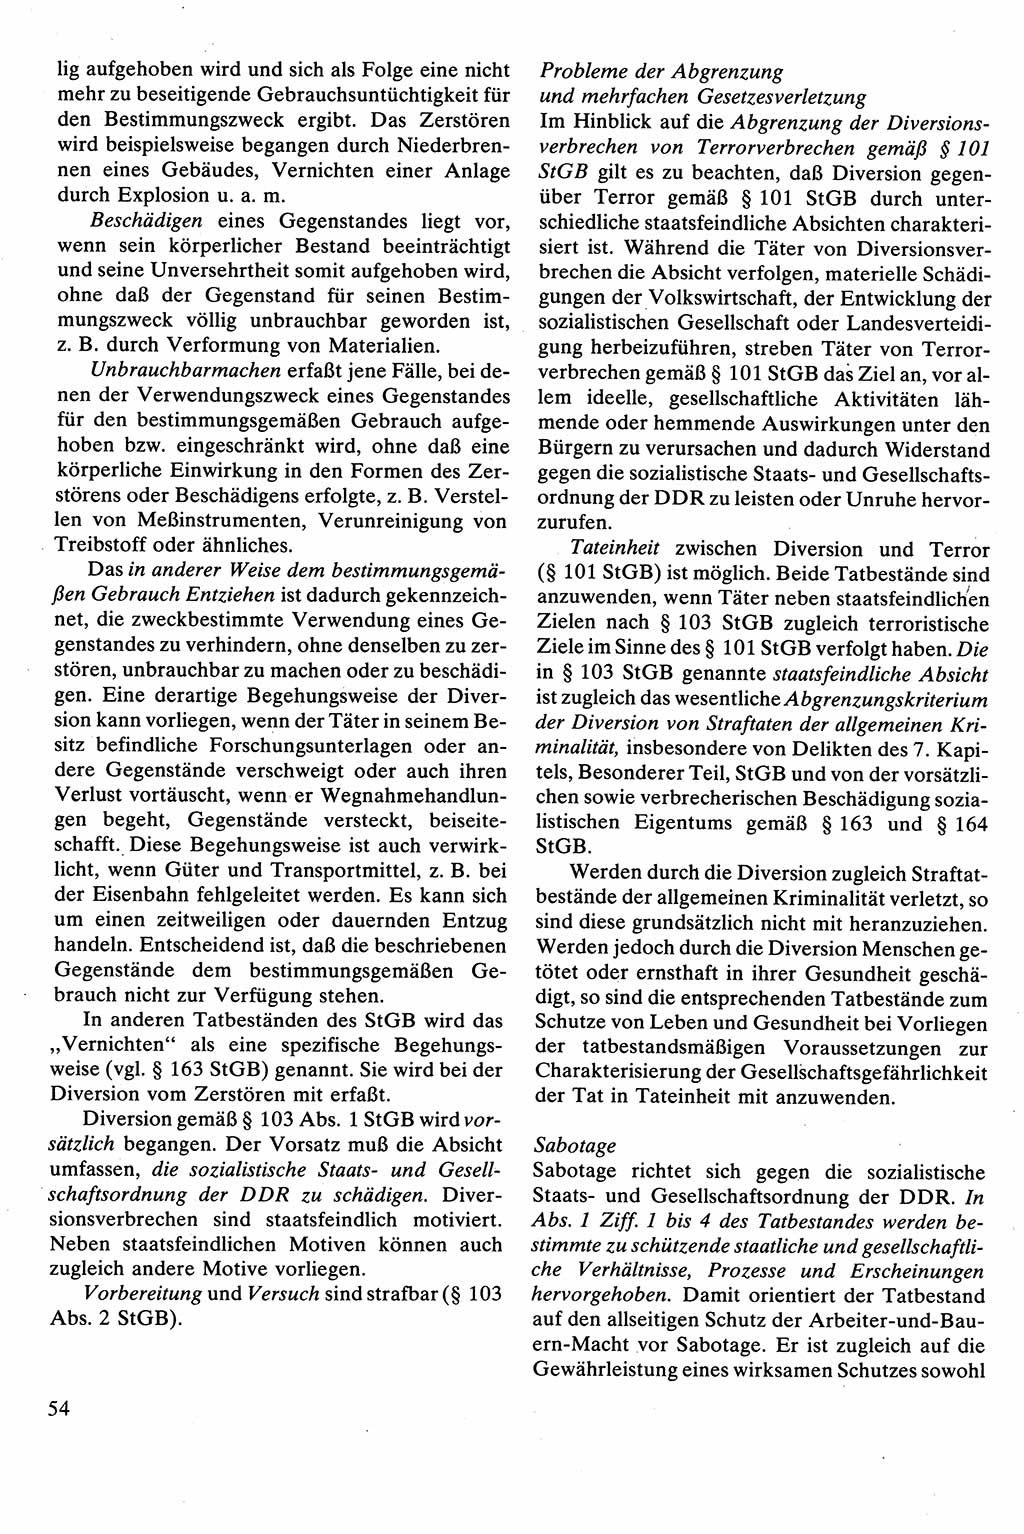 Strafrecht [Deutsche Demokratische Republik (DDR)], Besonderer Teil, Lehrbuch 1981, Seite 54 (Strafr. DDR BT Lb. 1981, S. 54)